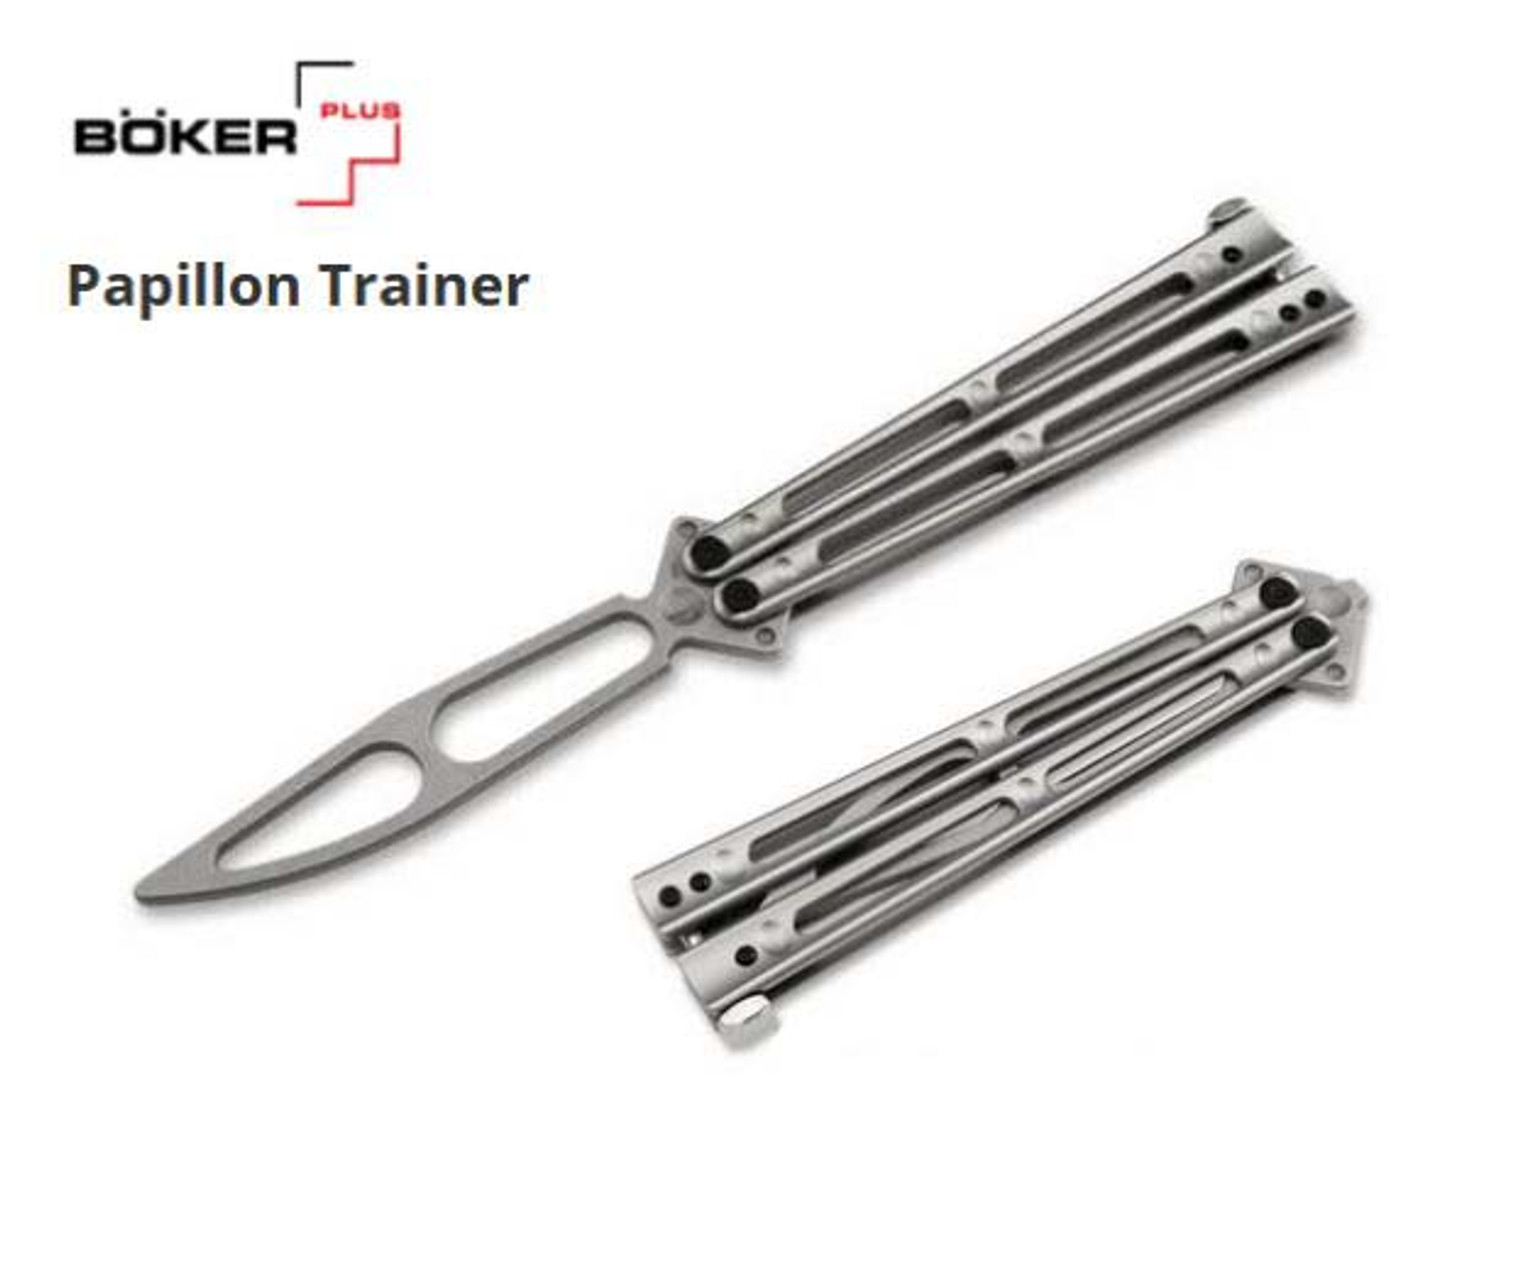 Boker Plus Papillon Training Knife, Stainless Steel, 01BO352